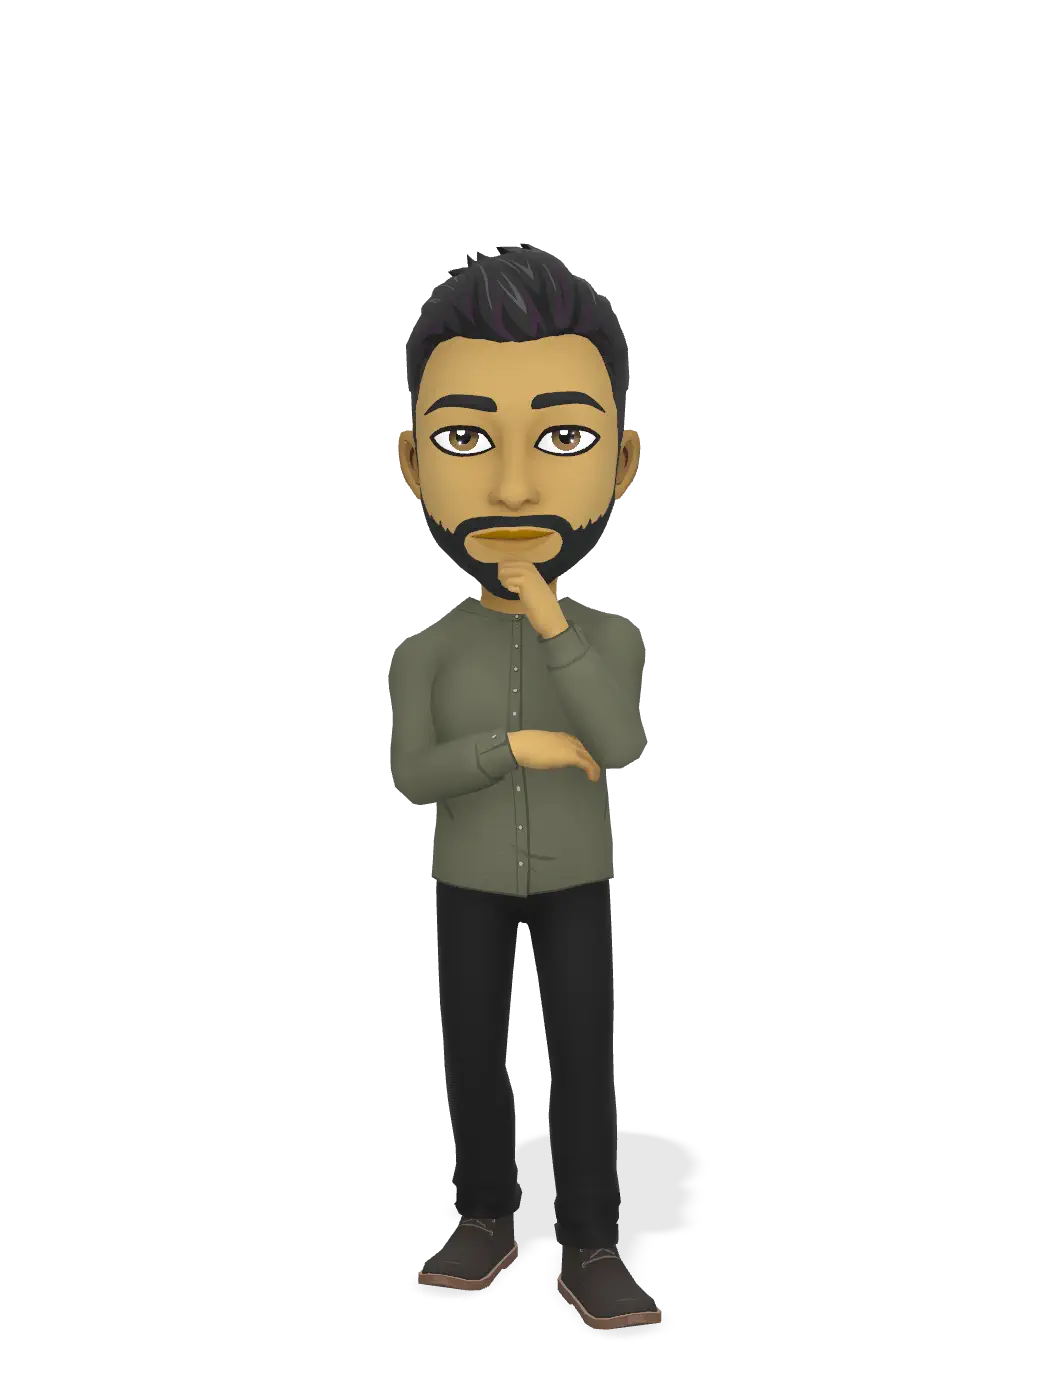 3D Bitmoji for o.l89 avatar